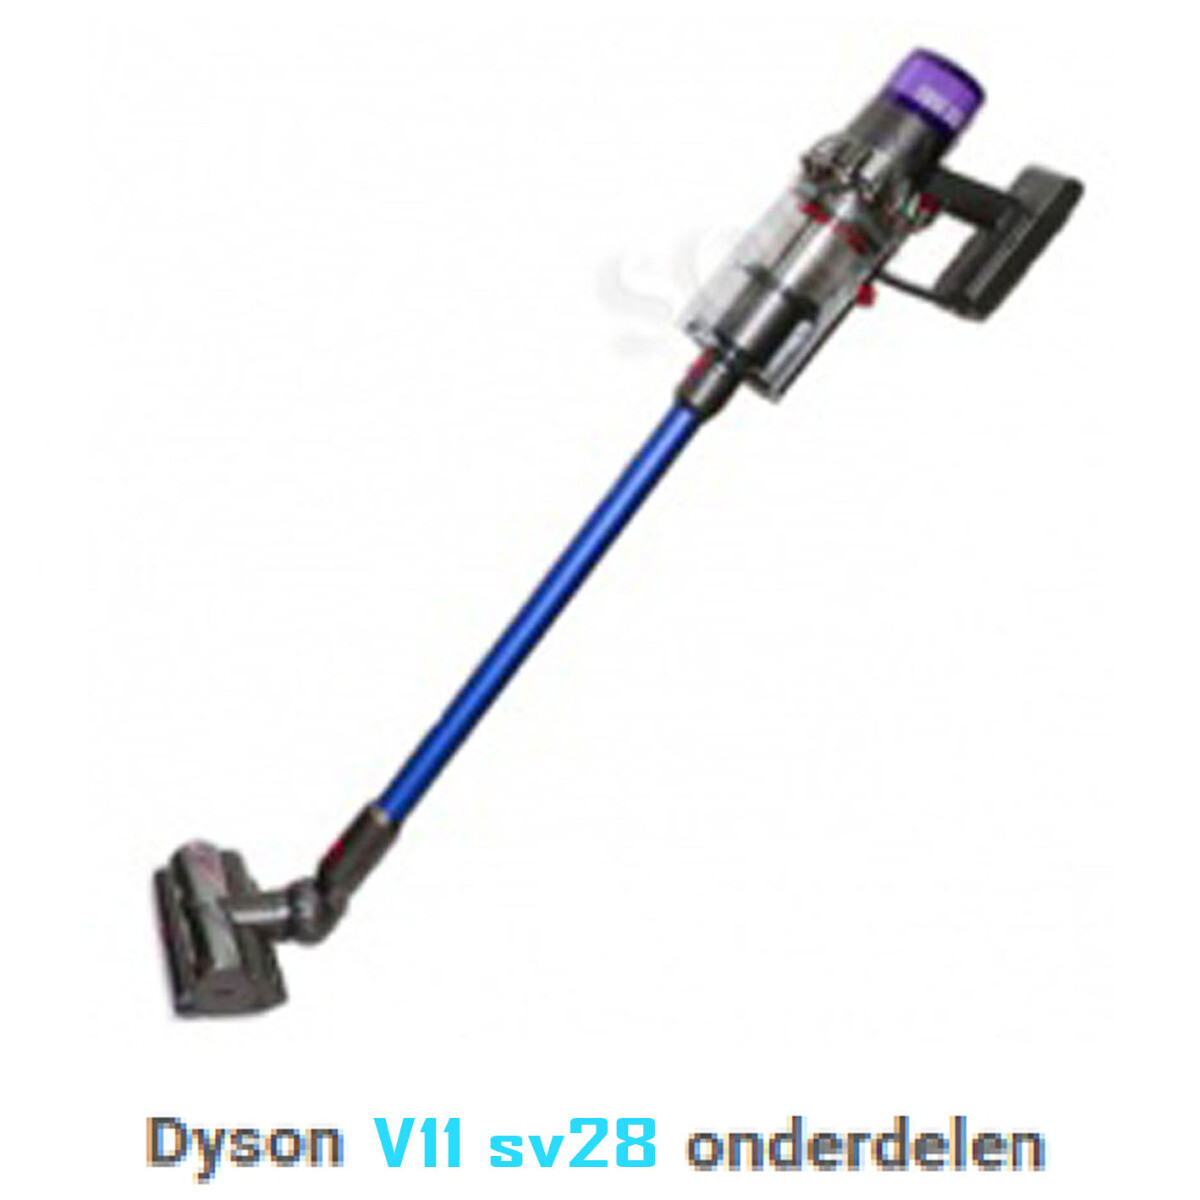 Dyson V11 sv28 onderdelen accessoires motor filter zuigmond accu batterij borstel buis oplader